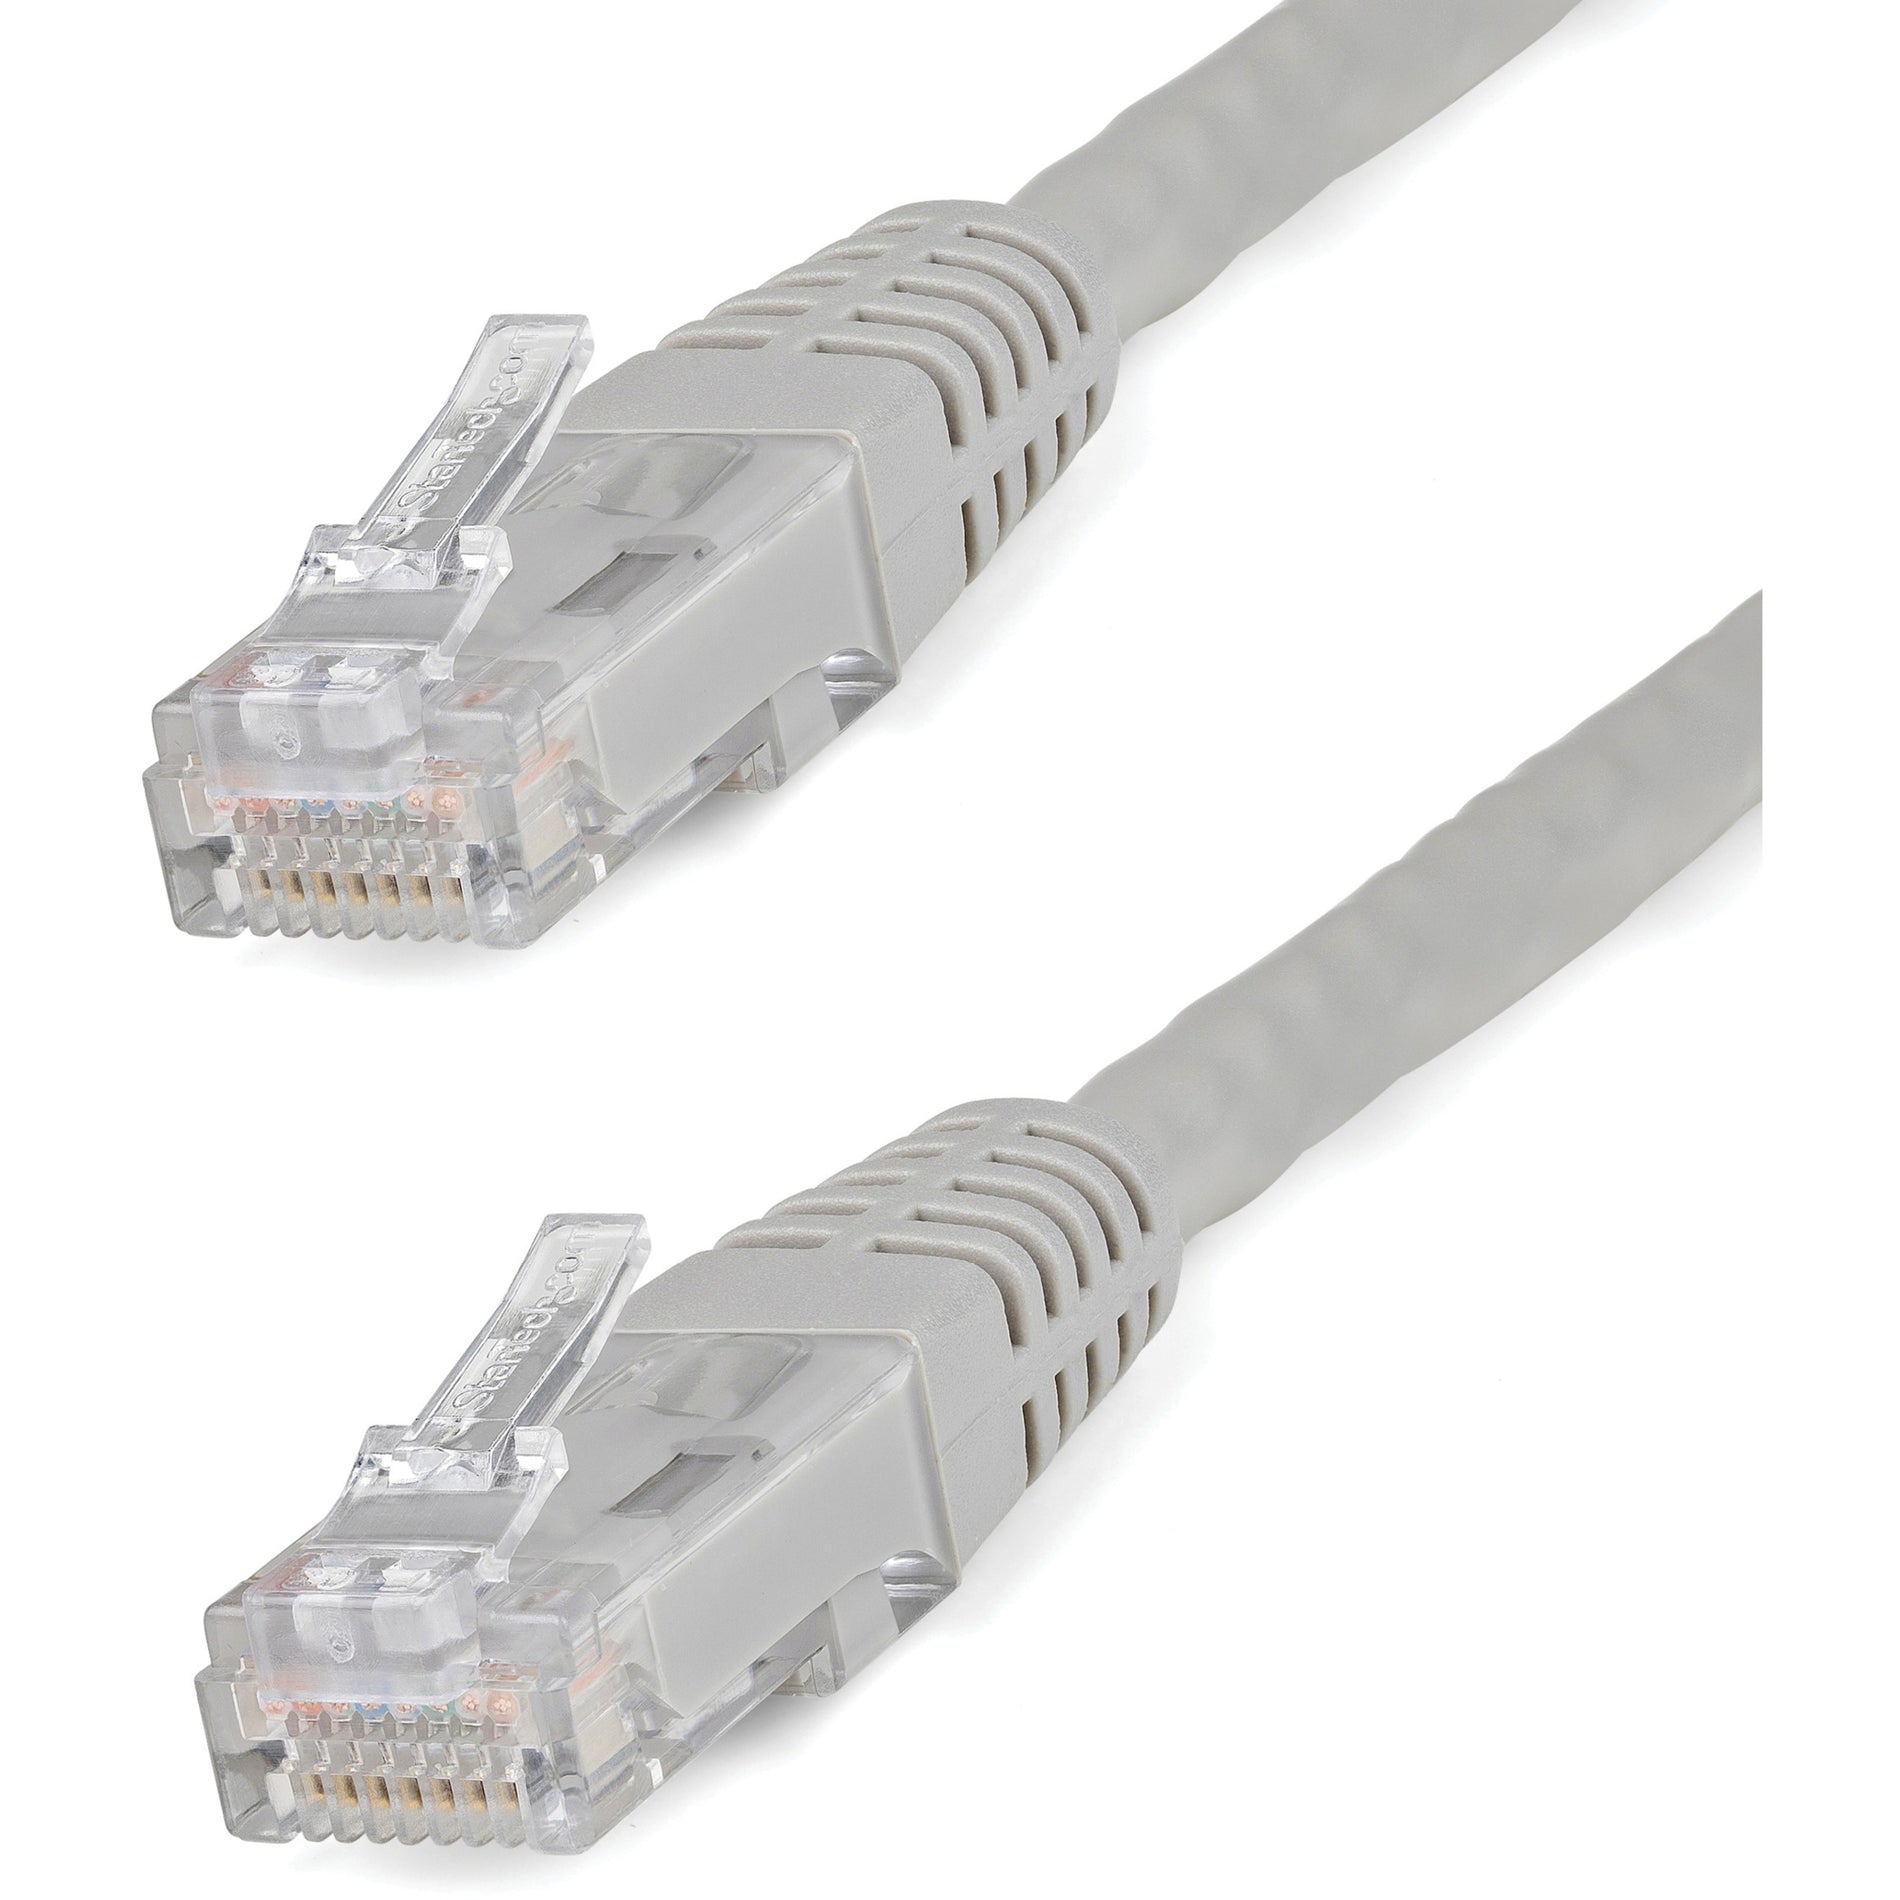 StarTech.com C6PATCH50GR 50ft Grau Cat6 UTP Patch-Kabel ETL Verifiziert 10 Gbit/s Datentransferrate Zugentlastung